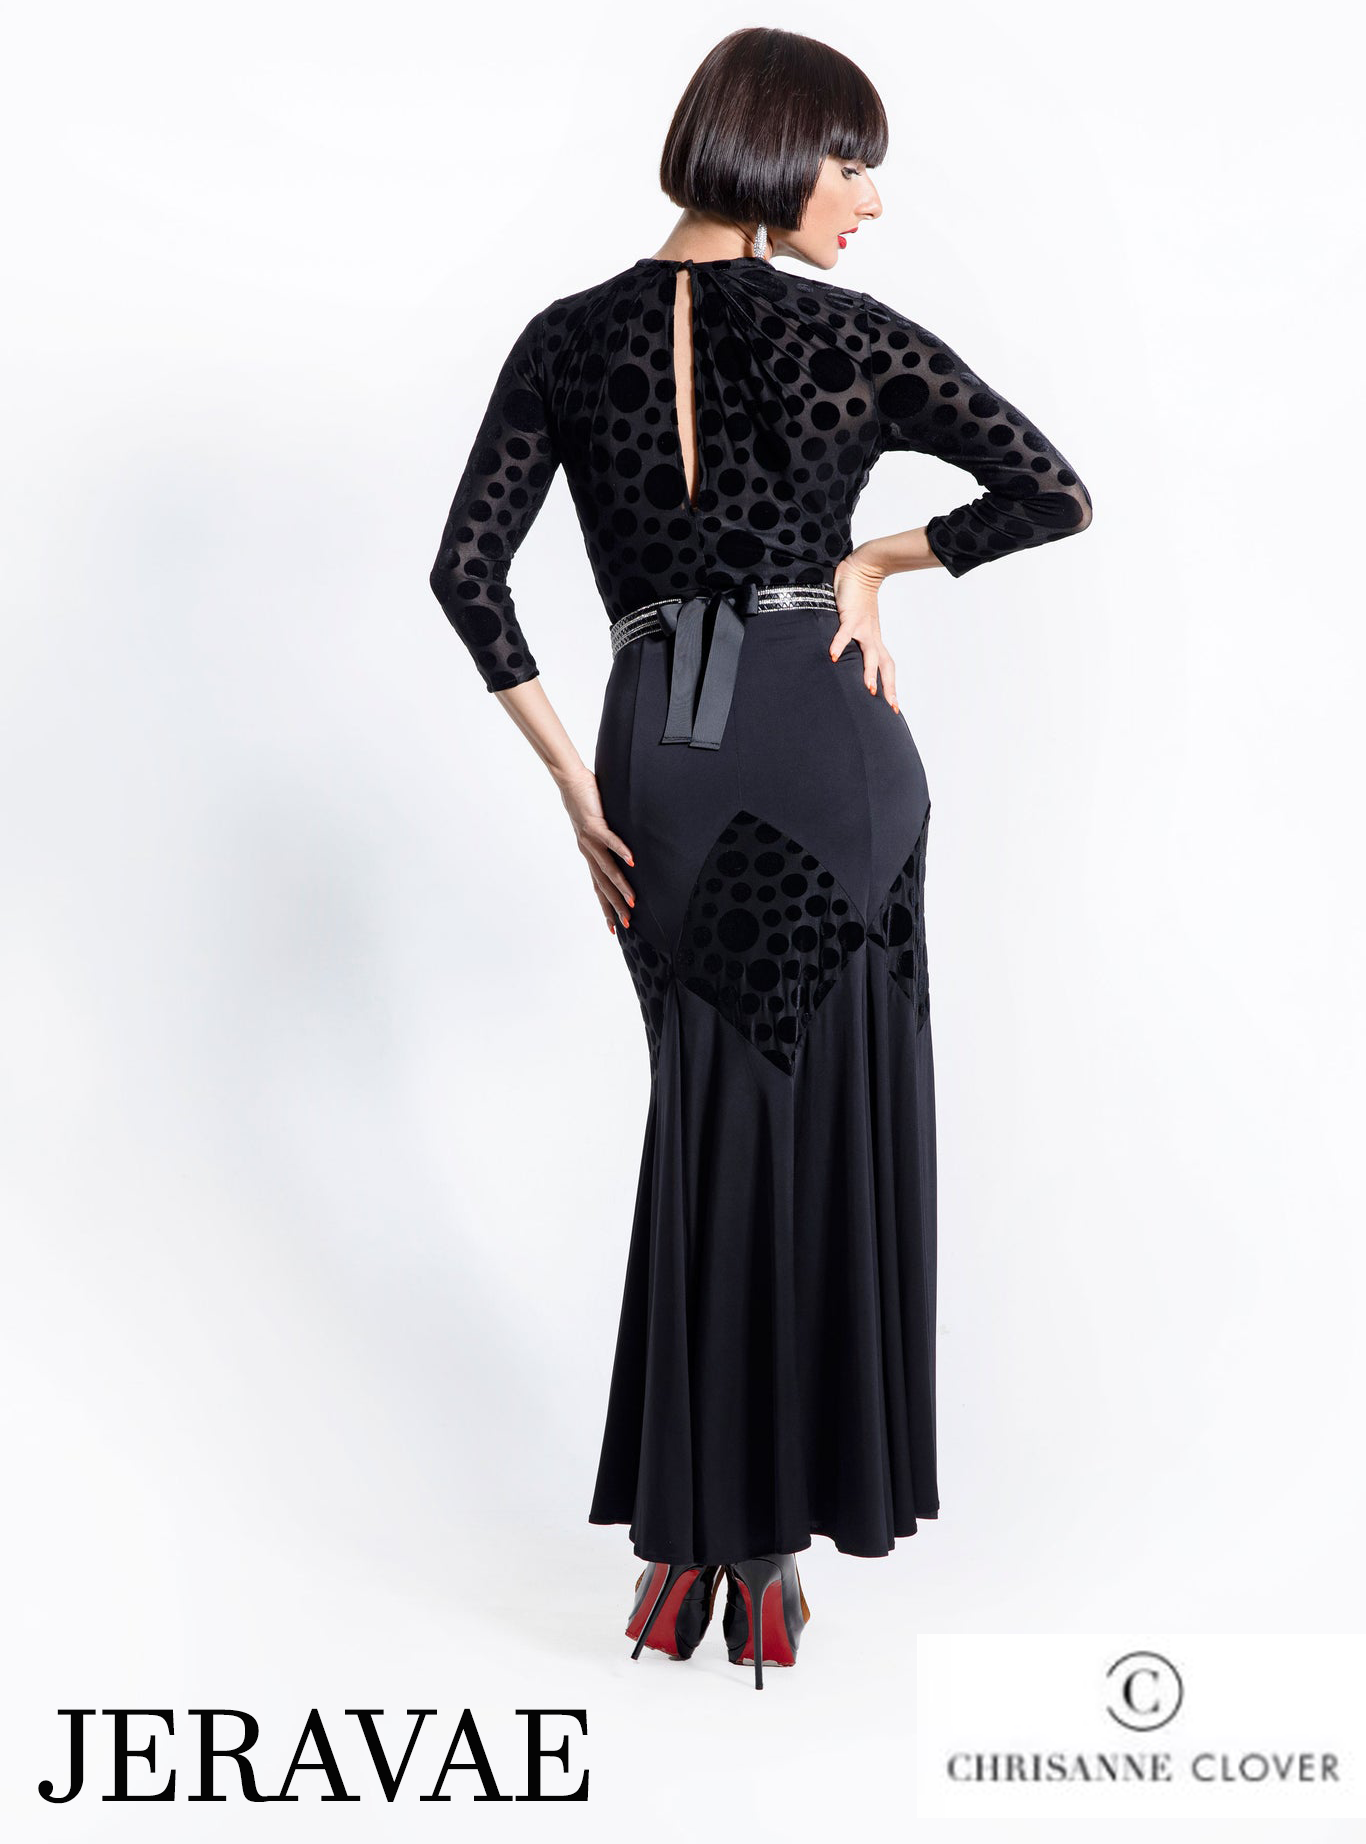 Back of ladies' black ballroom skirt by Chrisanne Clover